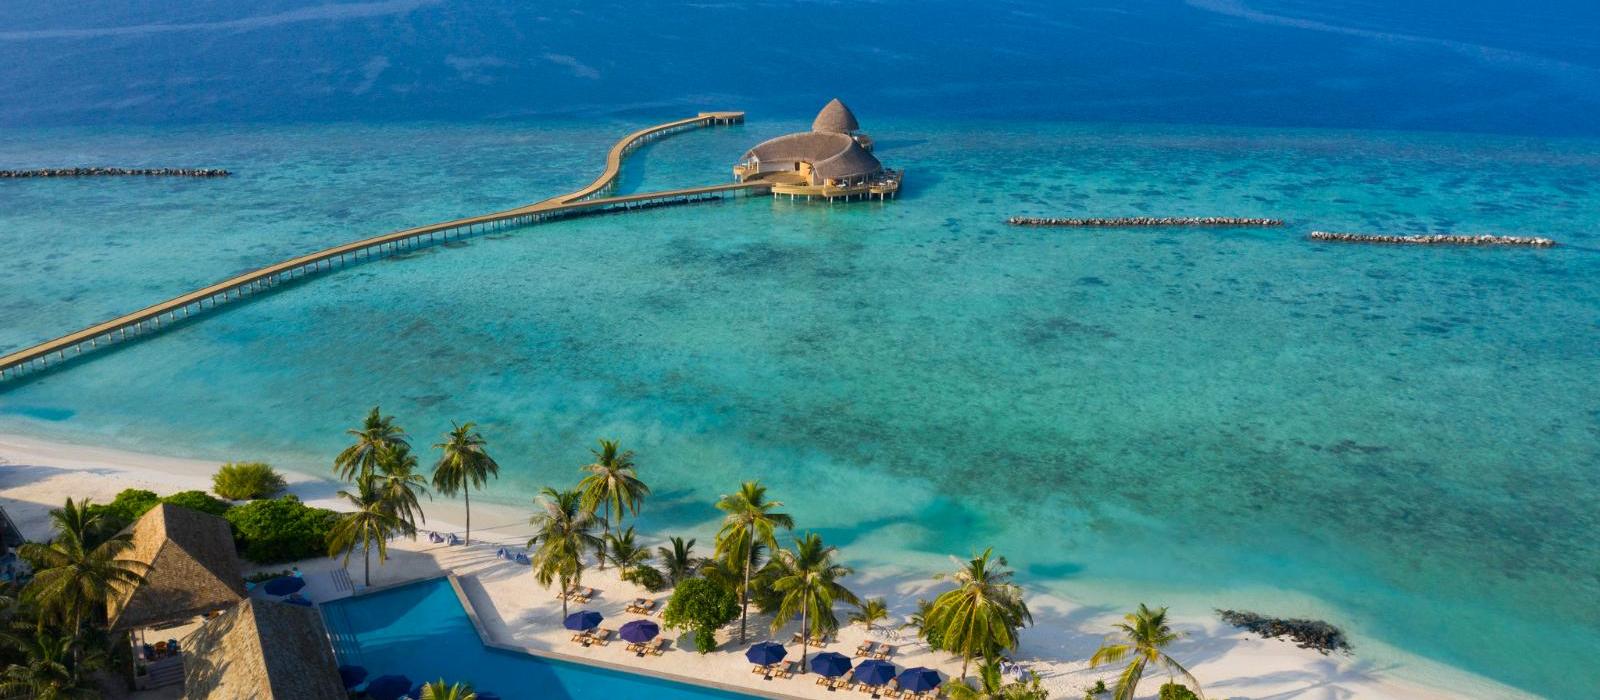 法鲁富士岛爱慕瑞德水疗度假酒店(Emerald Faarufushi Resort & Spa) 图片  www.lhw.cn